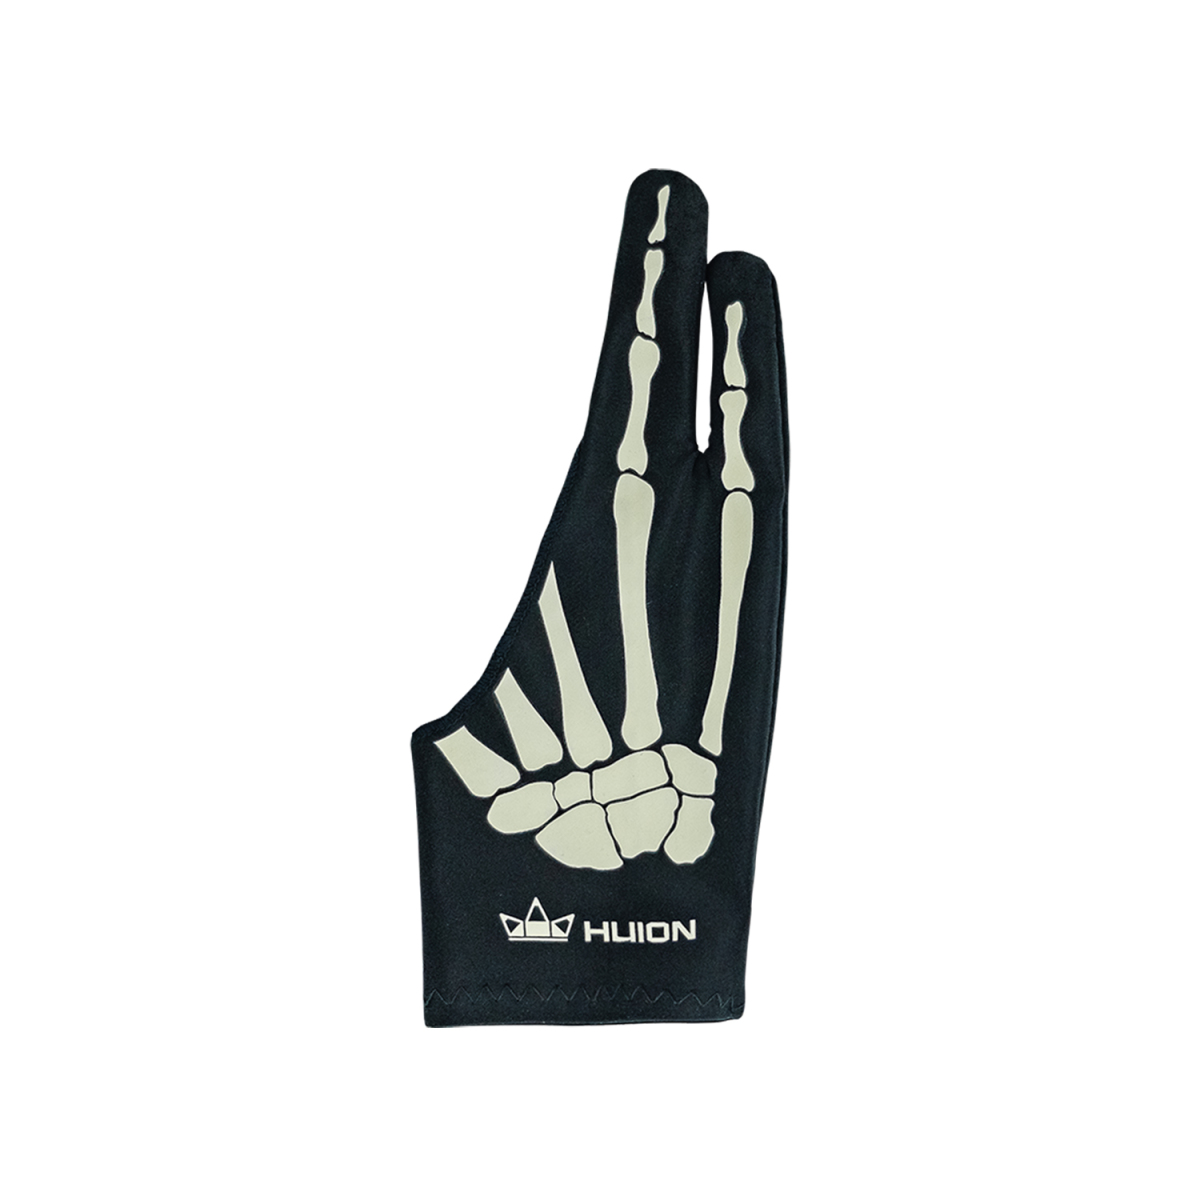 Snooty Fox Art Longline Sports Bra - Skeleton Hands